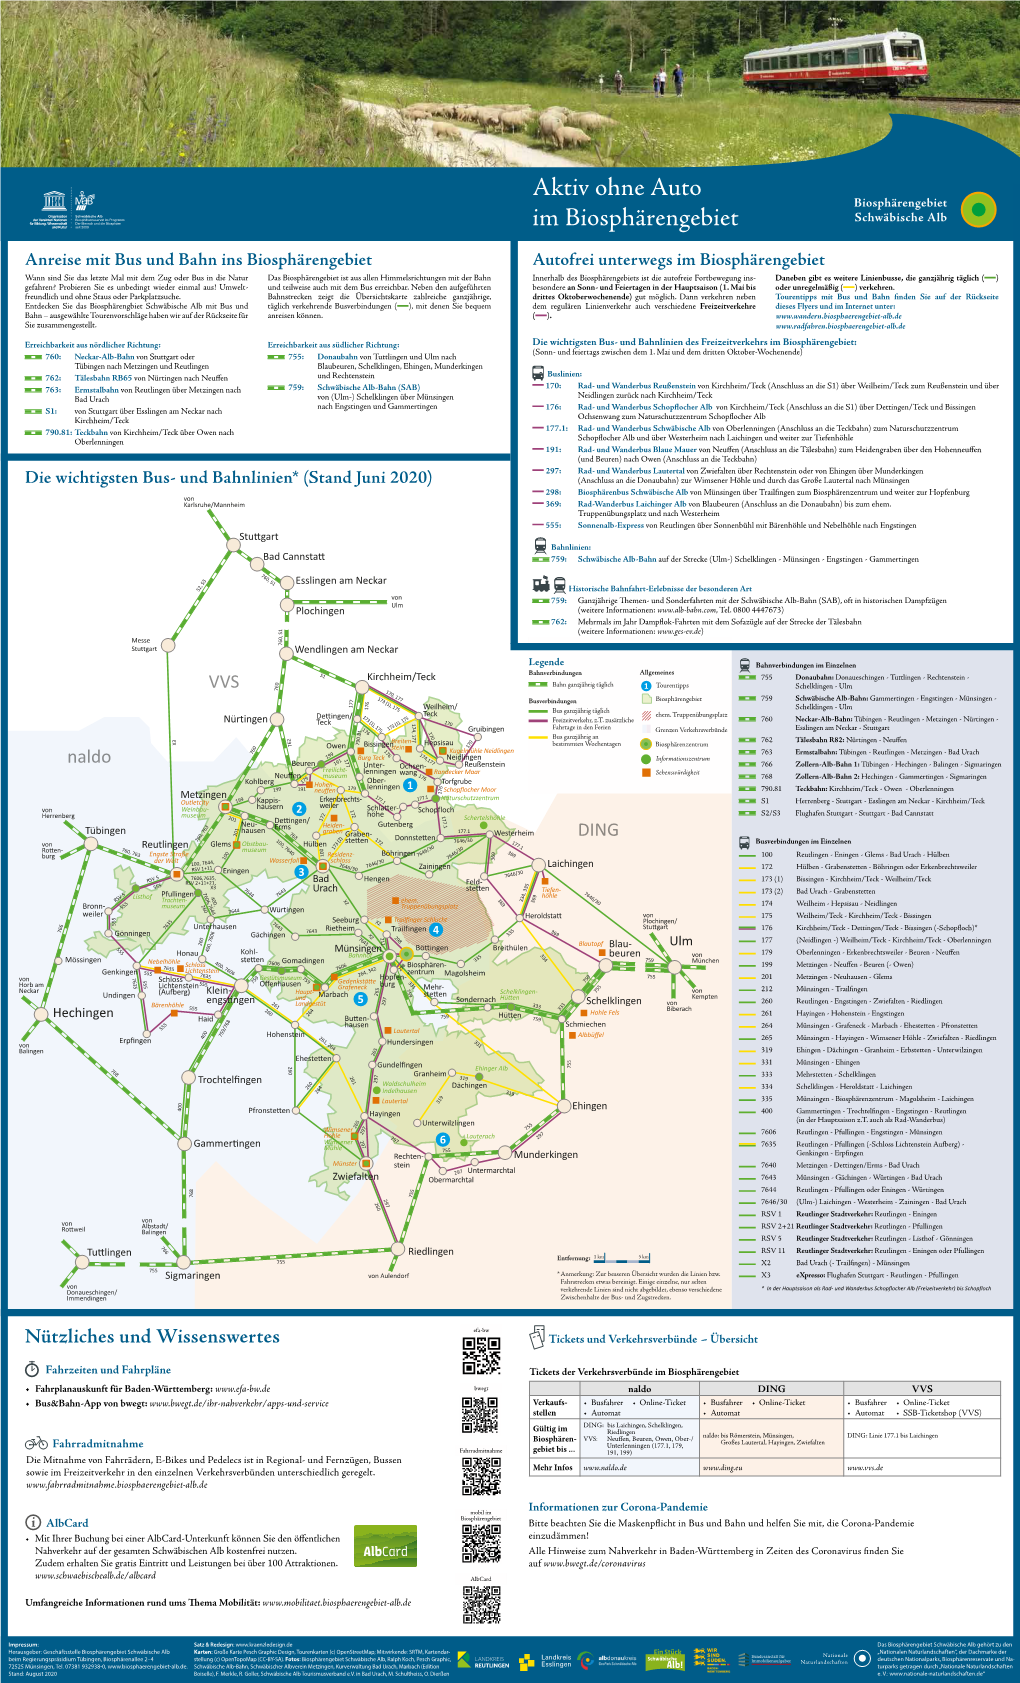 Die Wichtigsten Bus- Und Bahnlinien* (Stand Februar 2020)